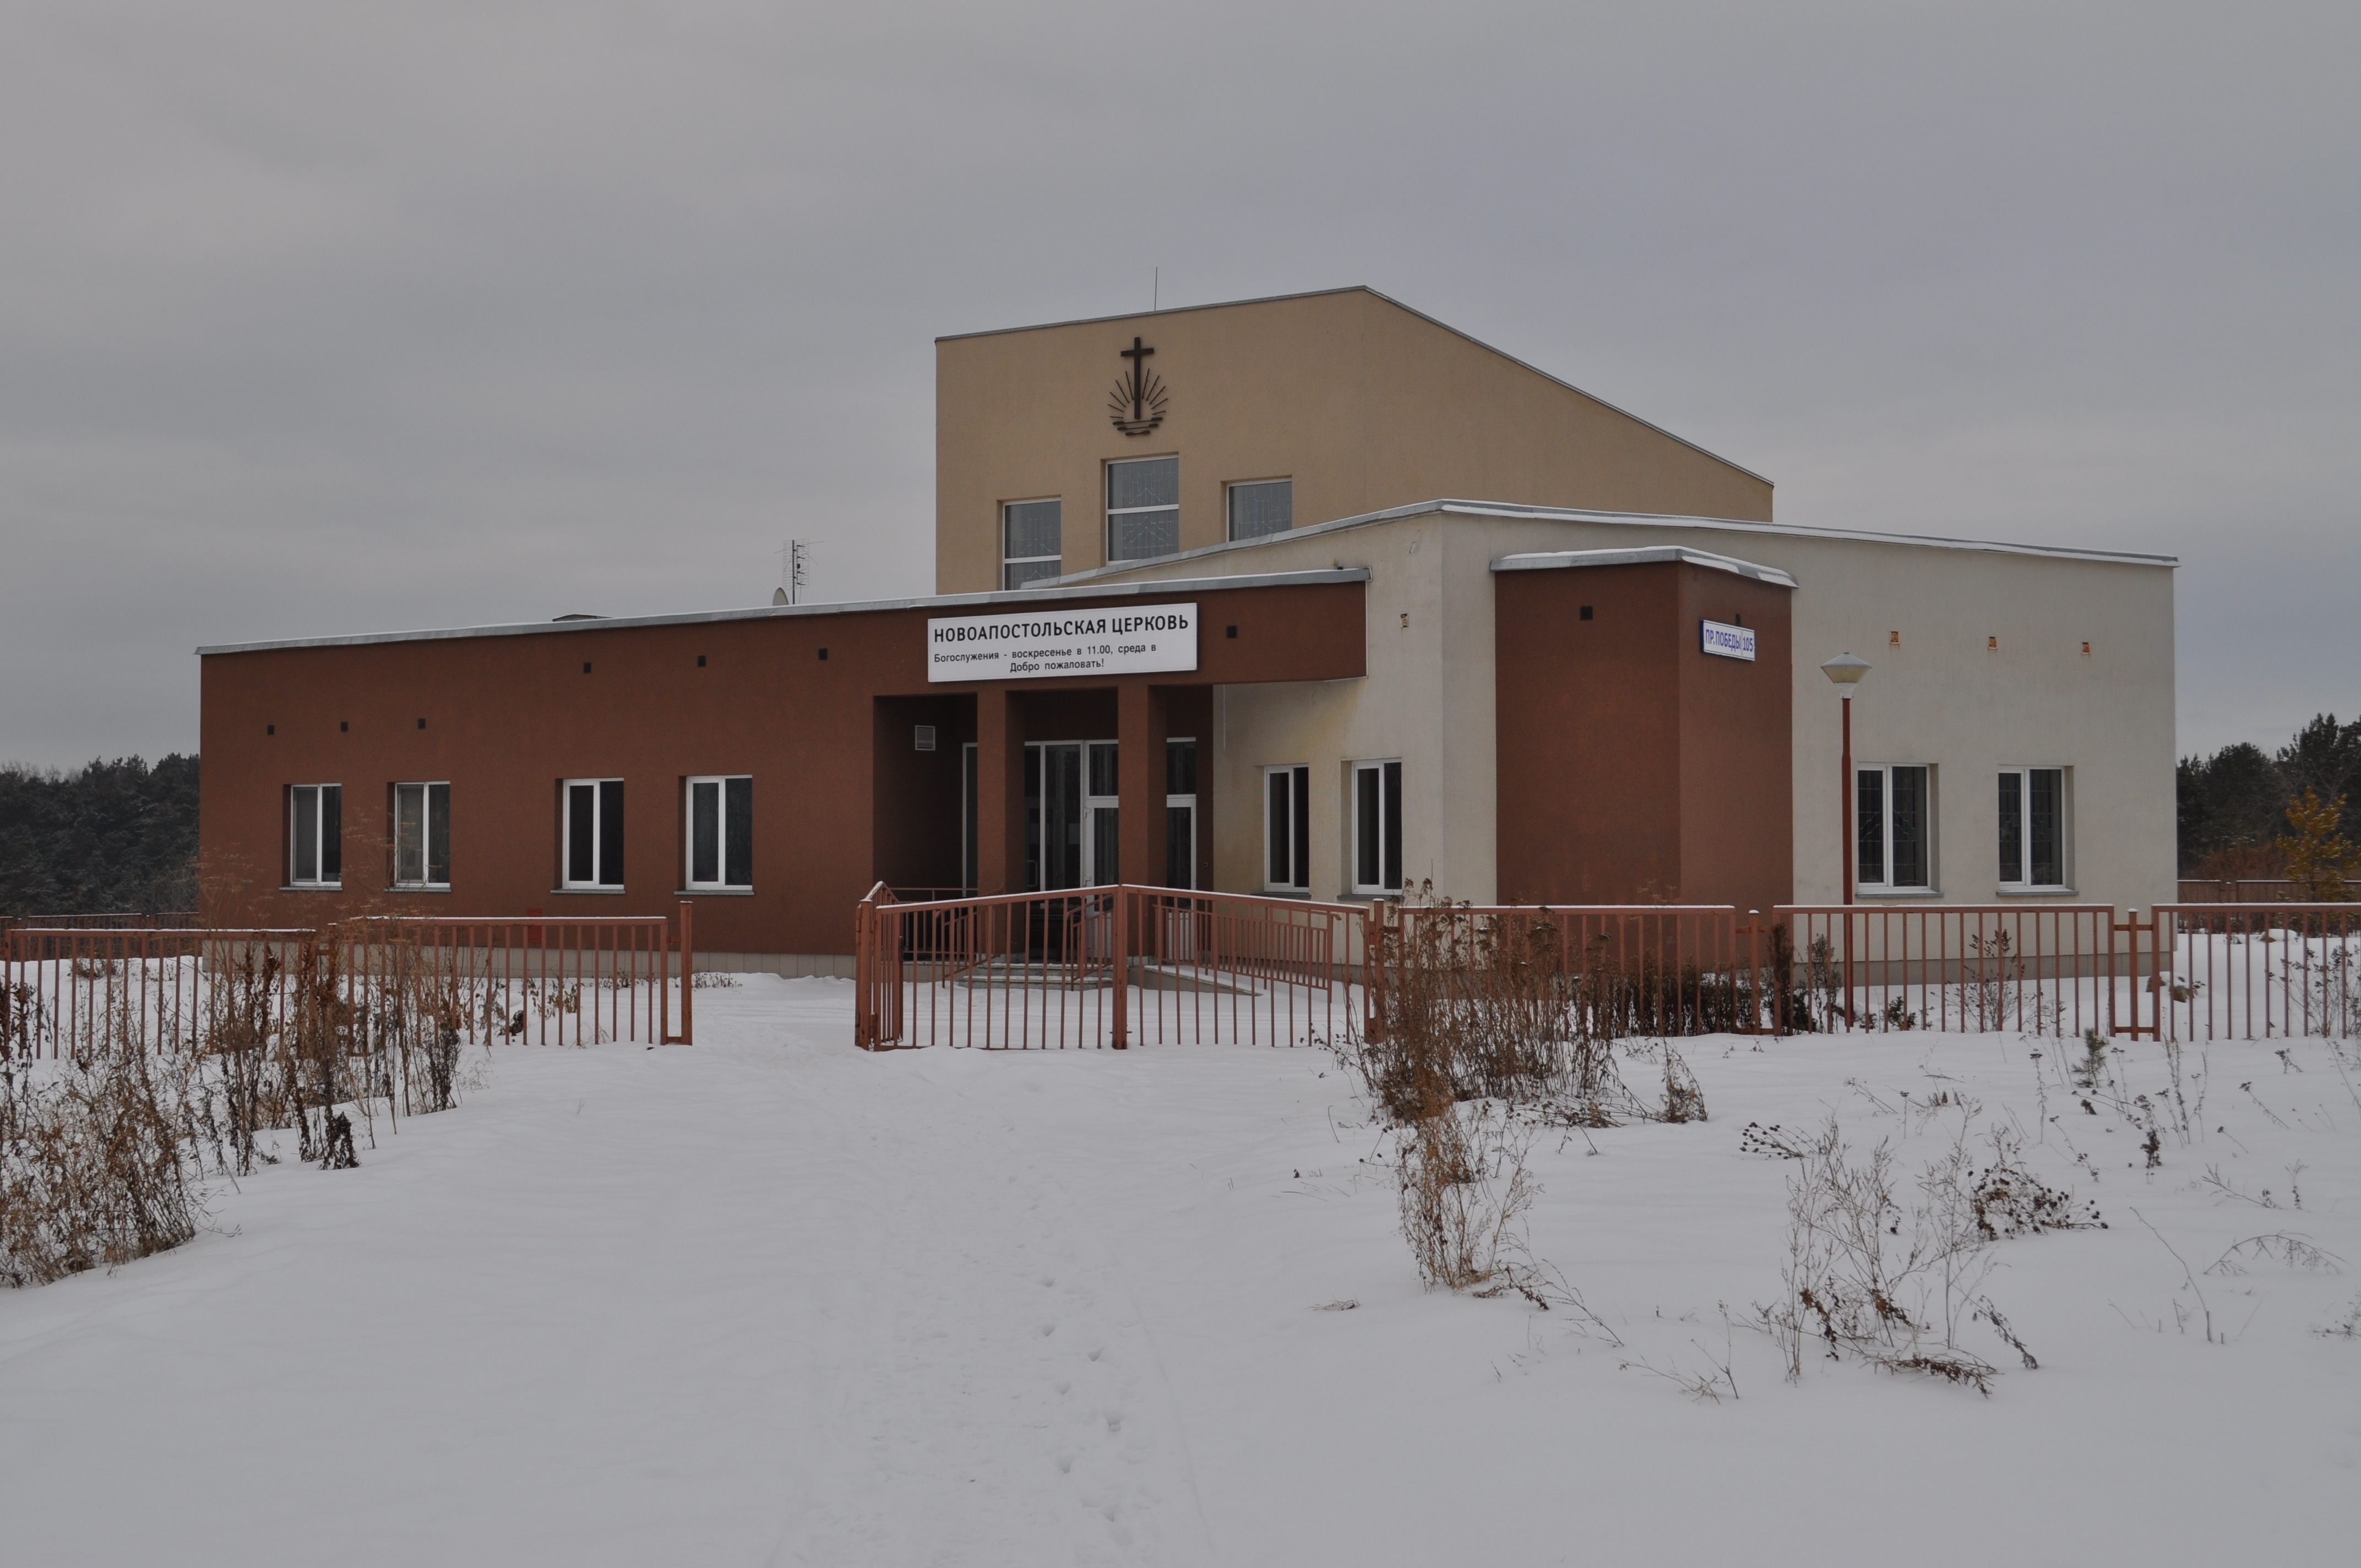 Новоапостольская Церковь Каменск-Уральский